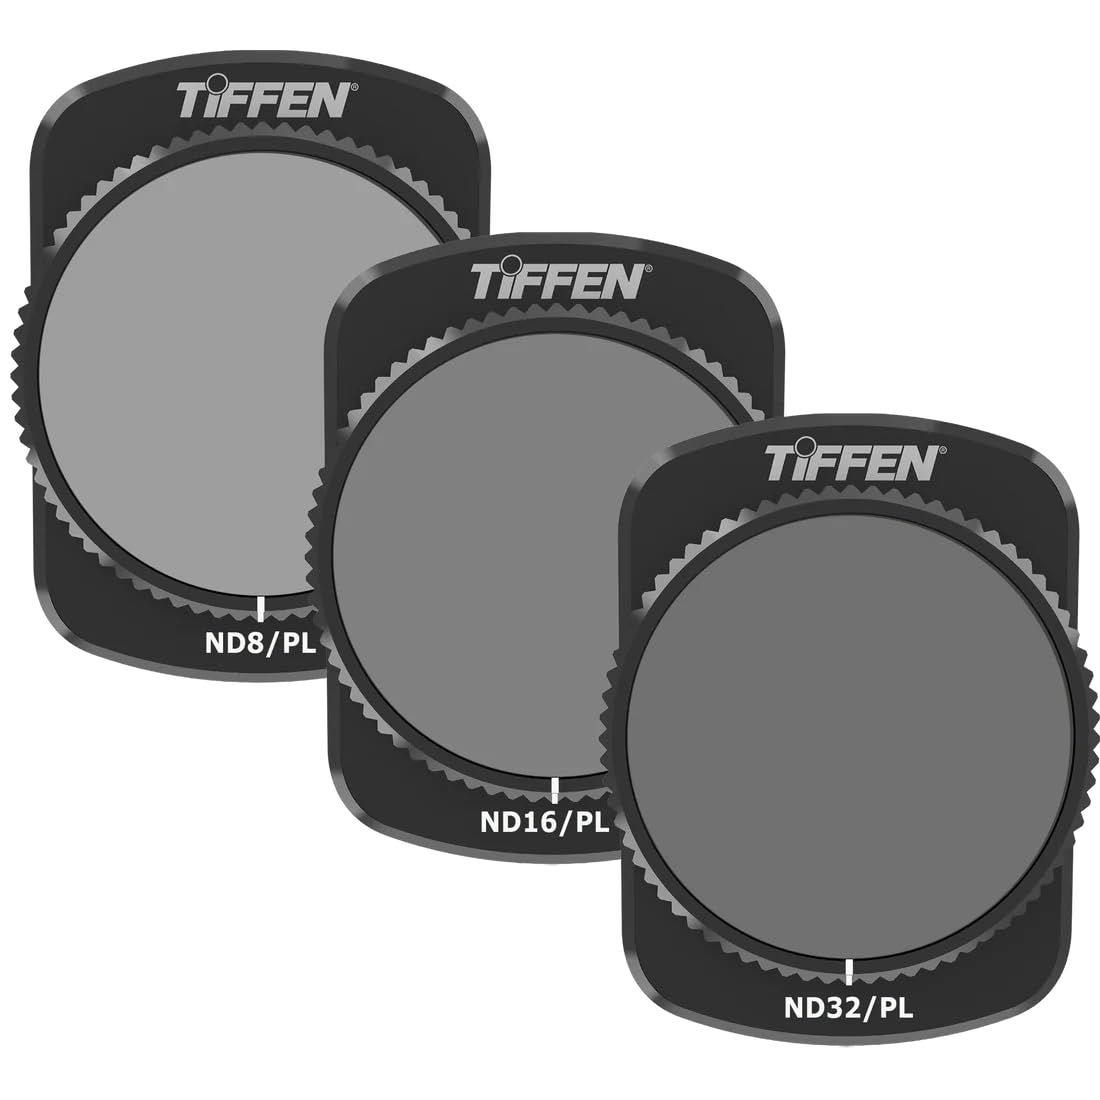 Osmo Pocket 3 Filter Kit 3, Tiffen Filter, ND8/PL, ND16/PL, ND